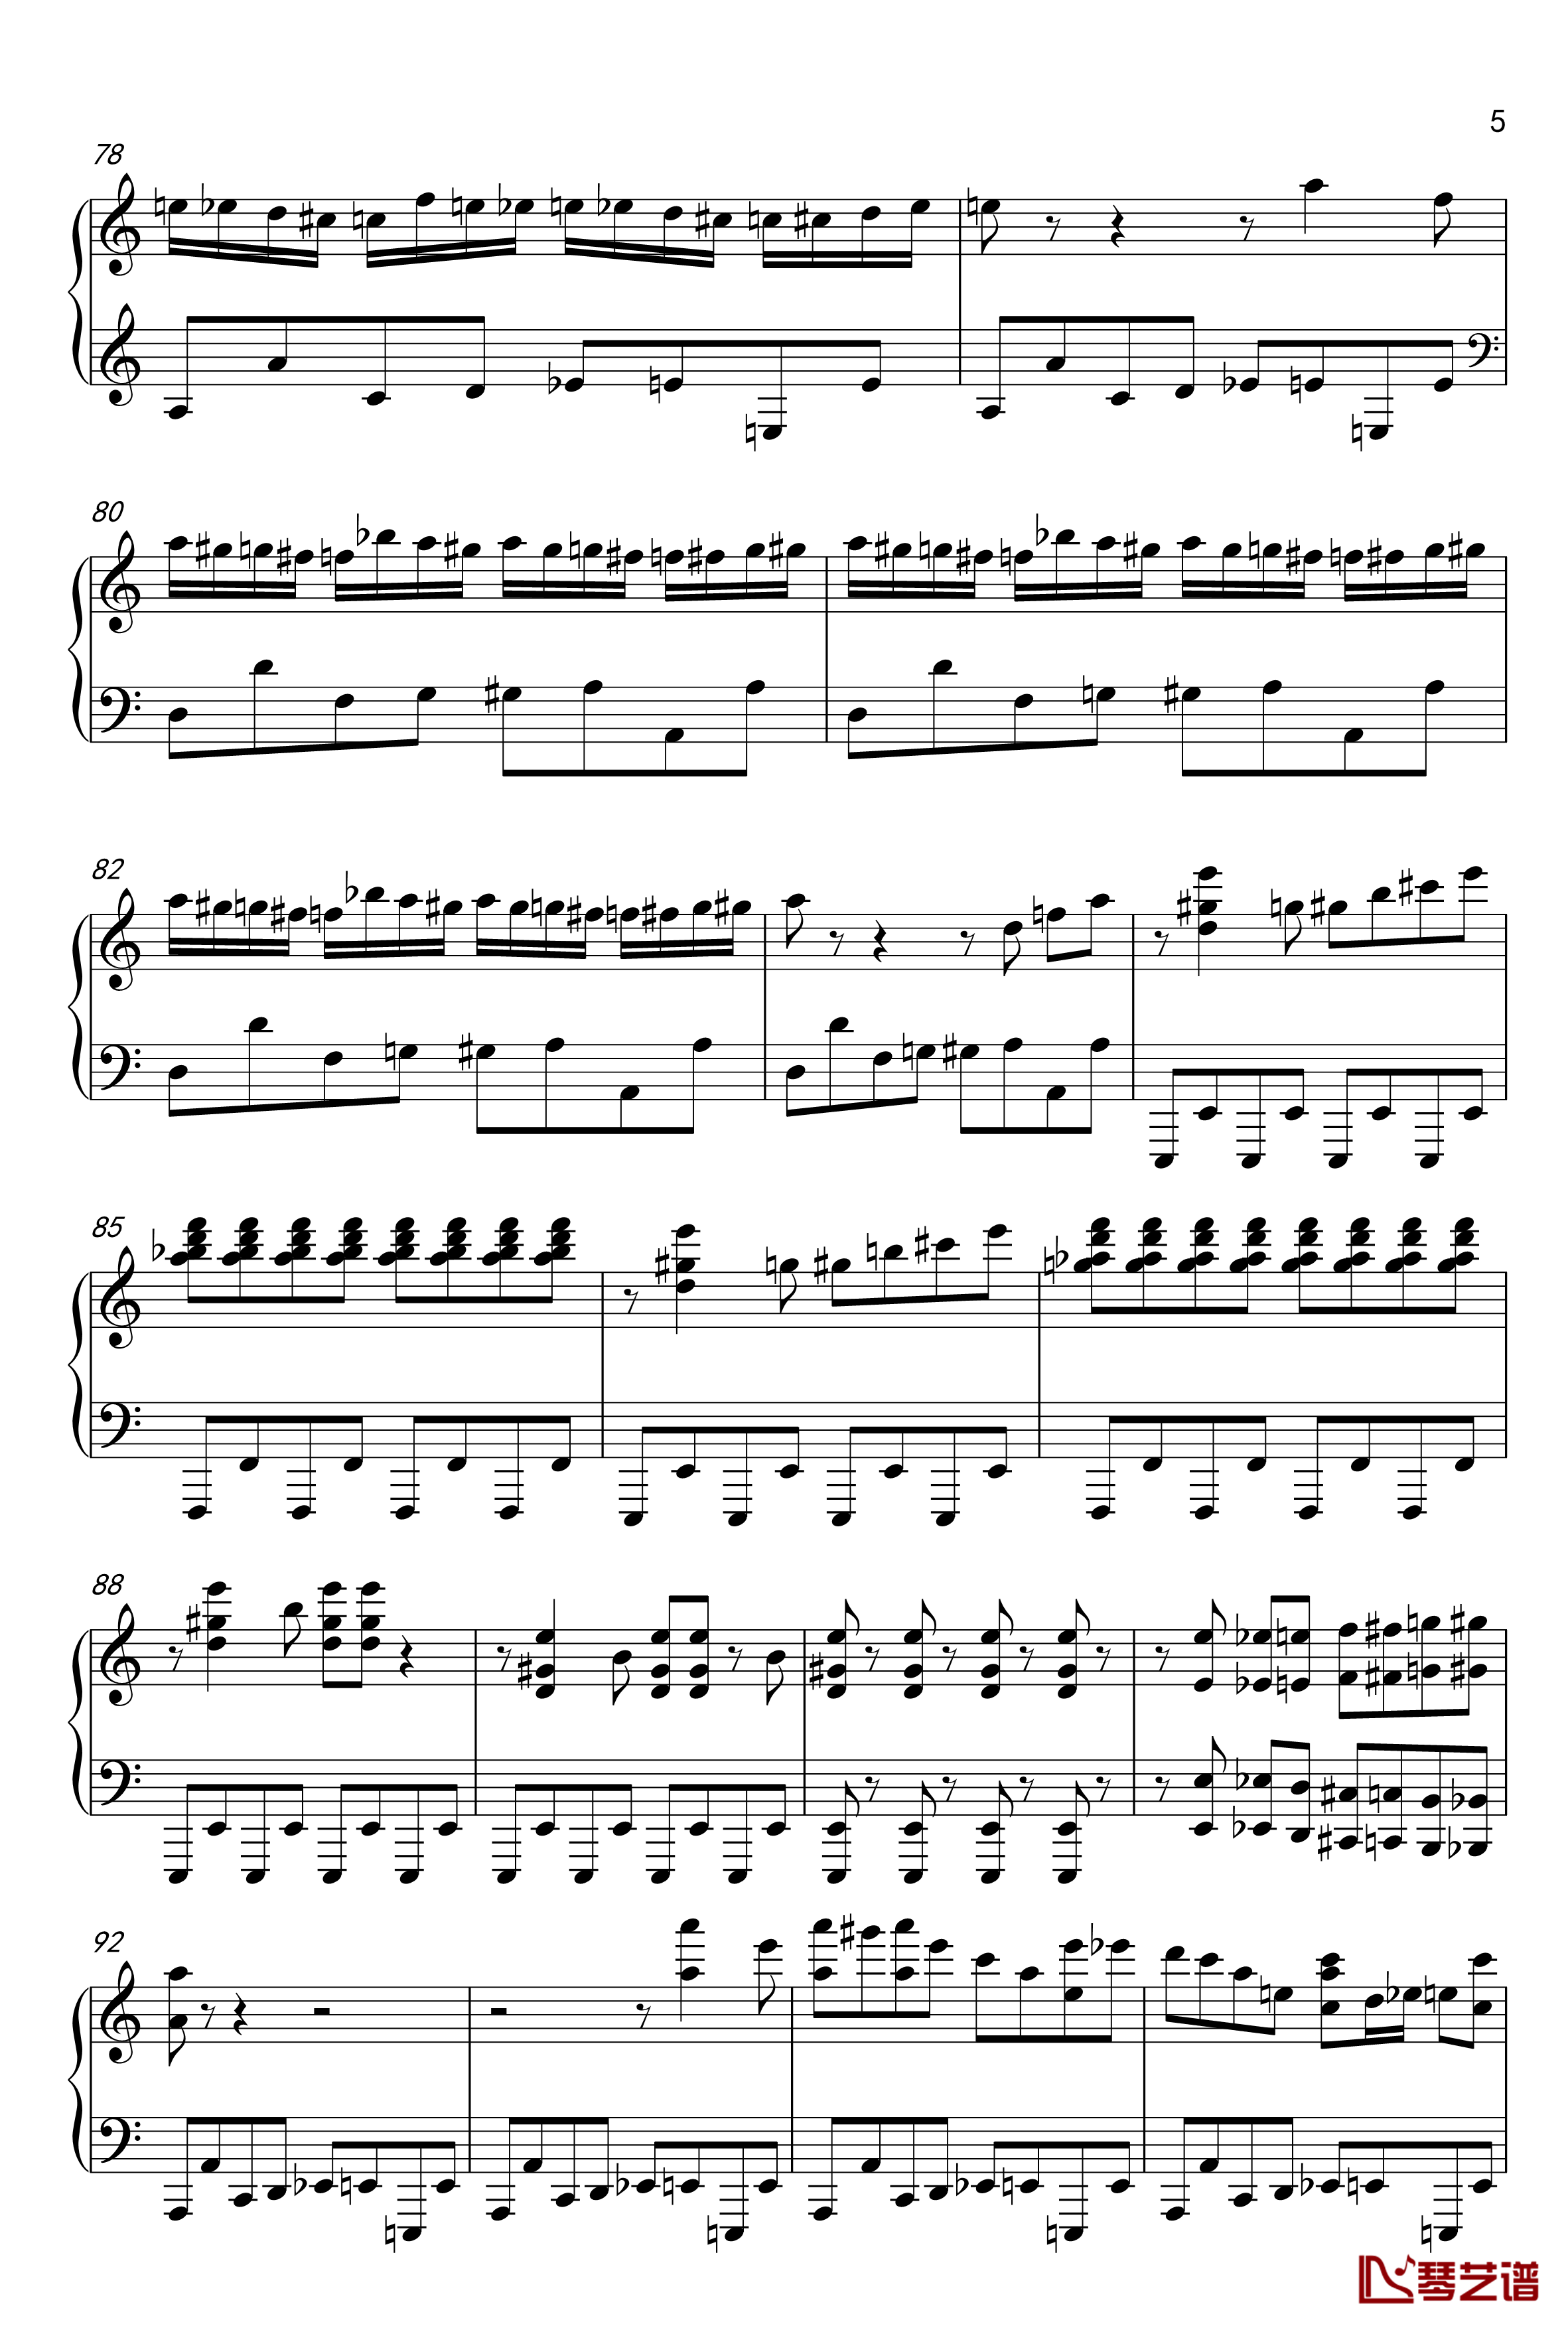 布吉乌吉野蜂飞舞钢琴谱爵士版 -里姆斯基-柯萨科夫5